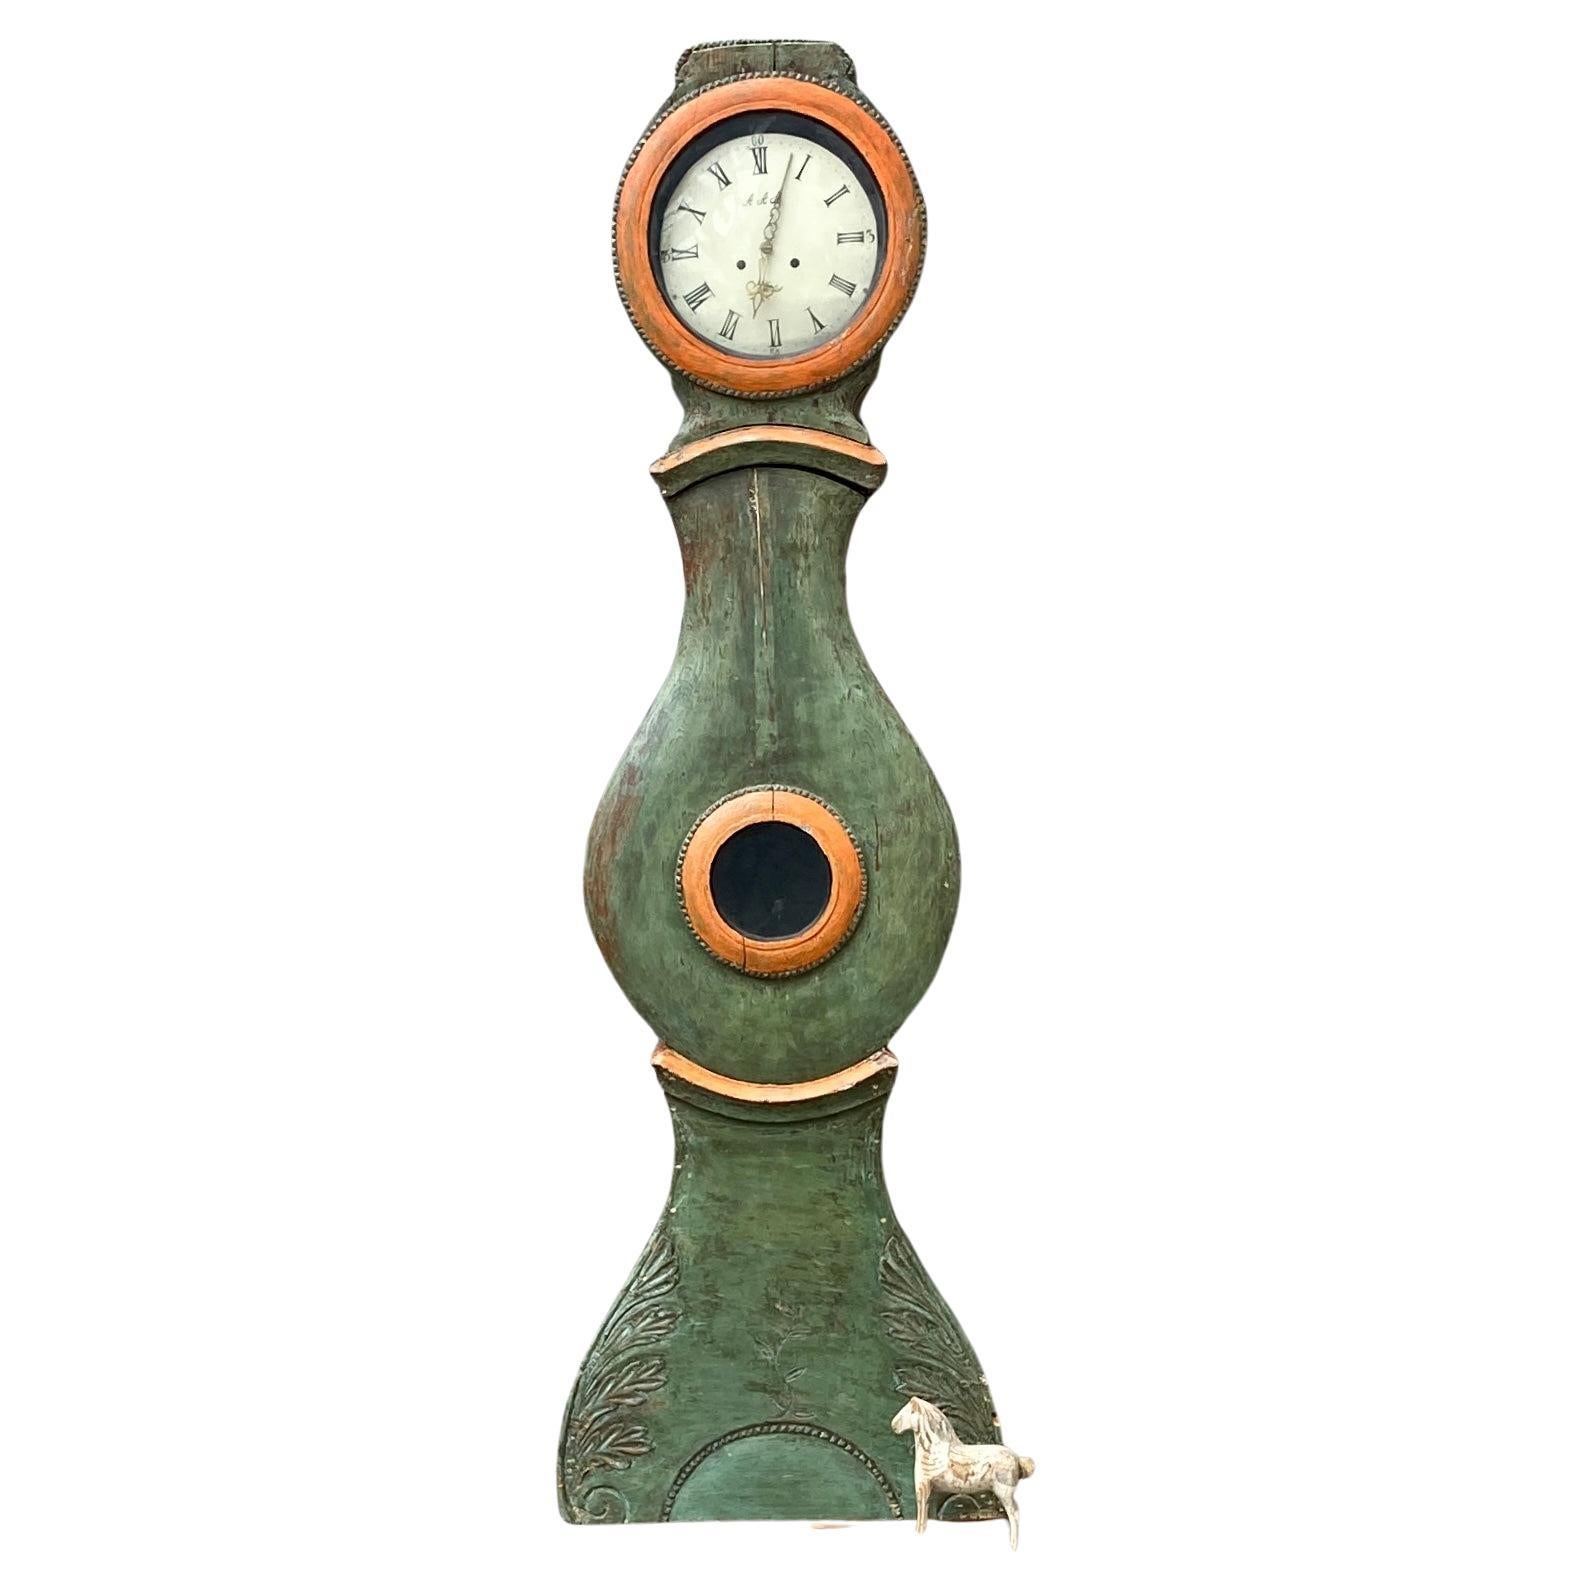 Schwedische antike Mora antiques Uhr aus den frühen 1800er Jahren mit grüner Farbe mit orangefarbenen Details, die auf das Gehäuse gemalt sind. 
Das Uhrwerk wird so verkauft, wie es ist, und sollte nur als dekoratives Stück betrachtet werden, auch